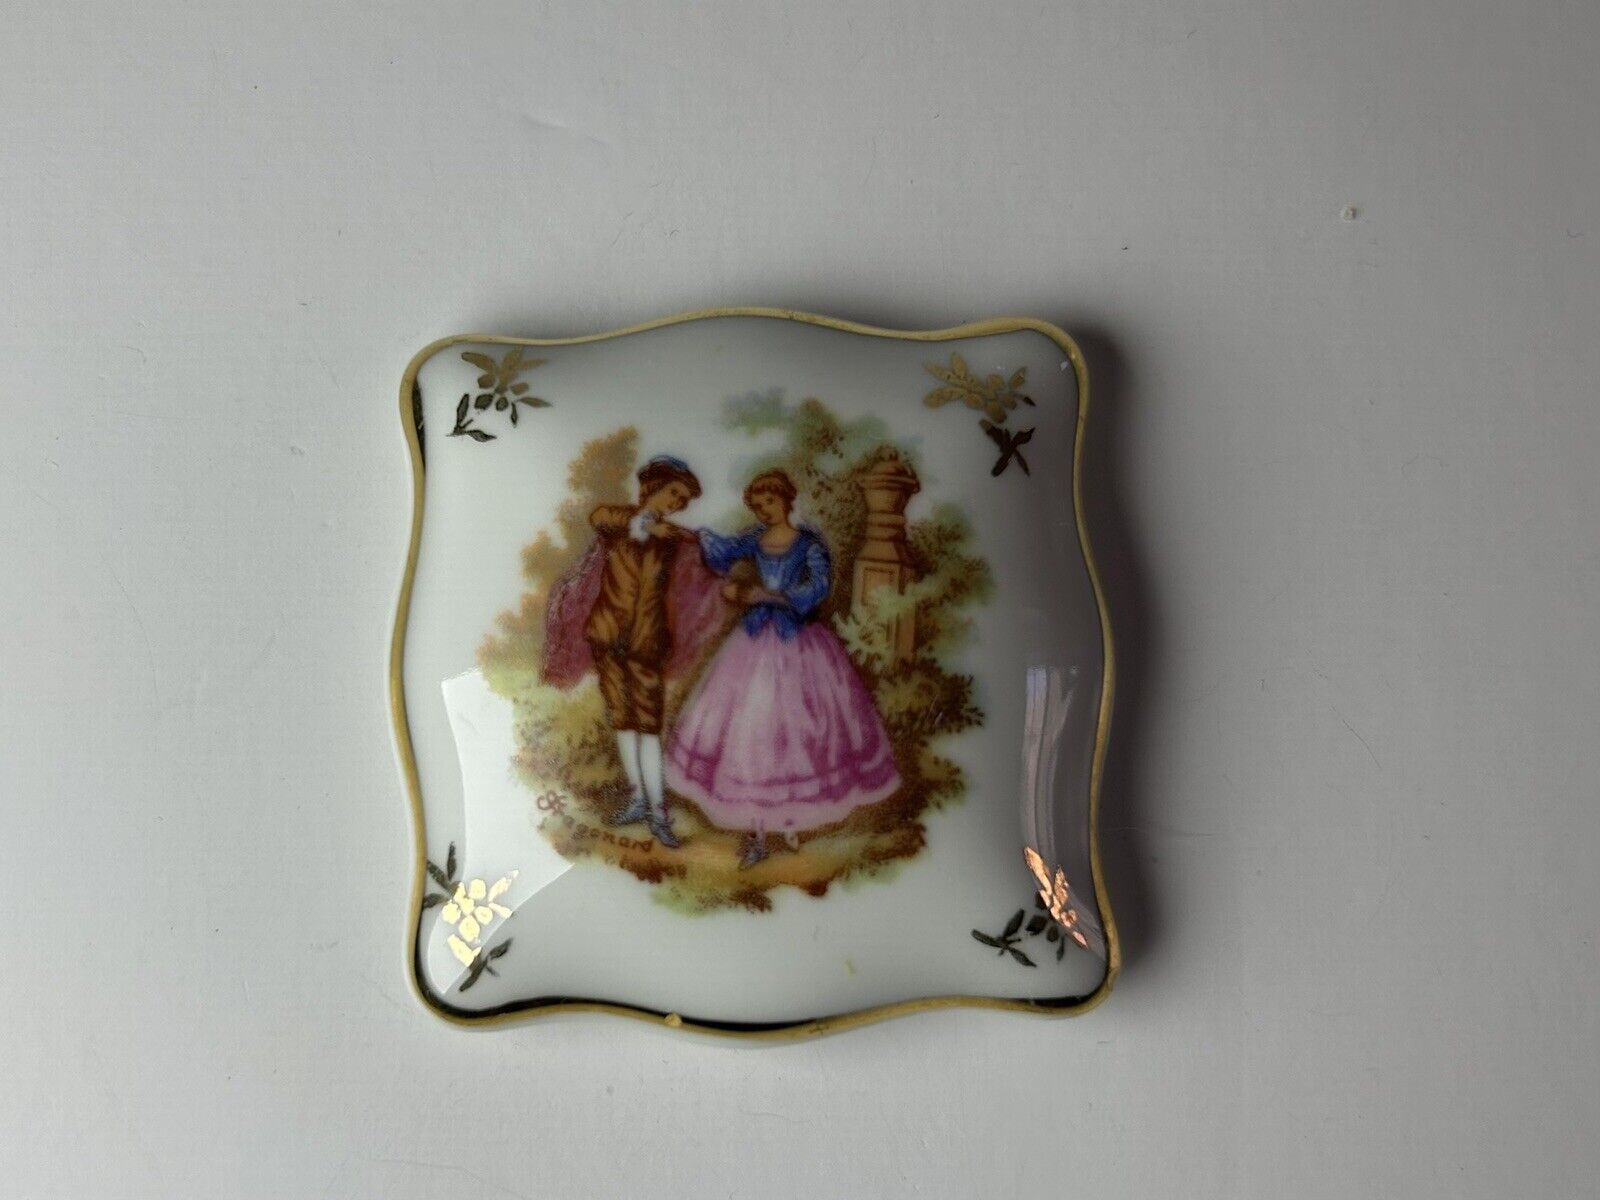 Vintage - Limoges France porcelain trinket box - Couple